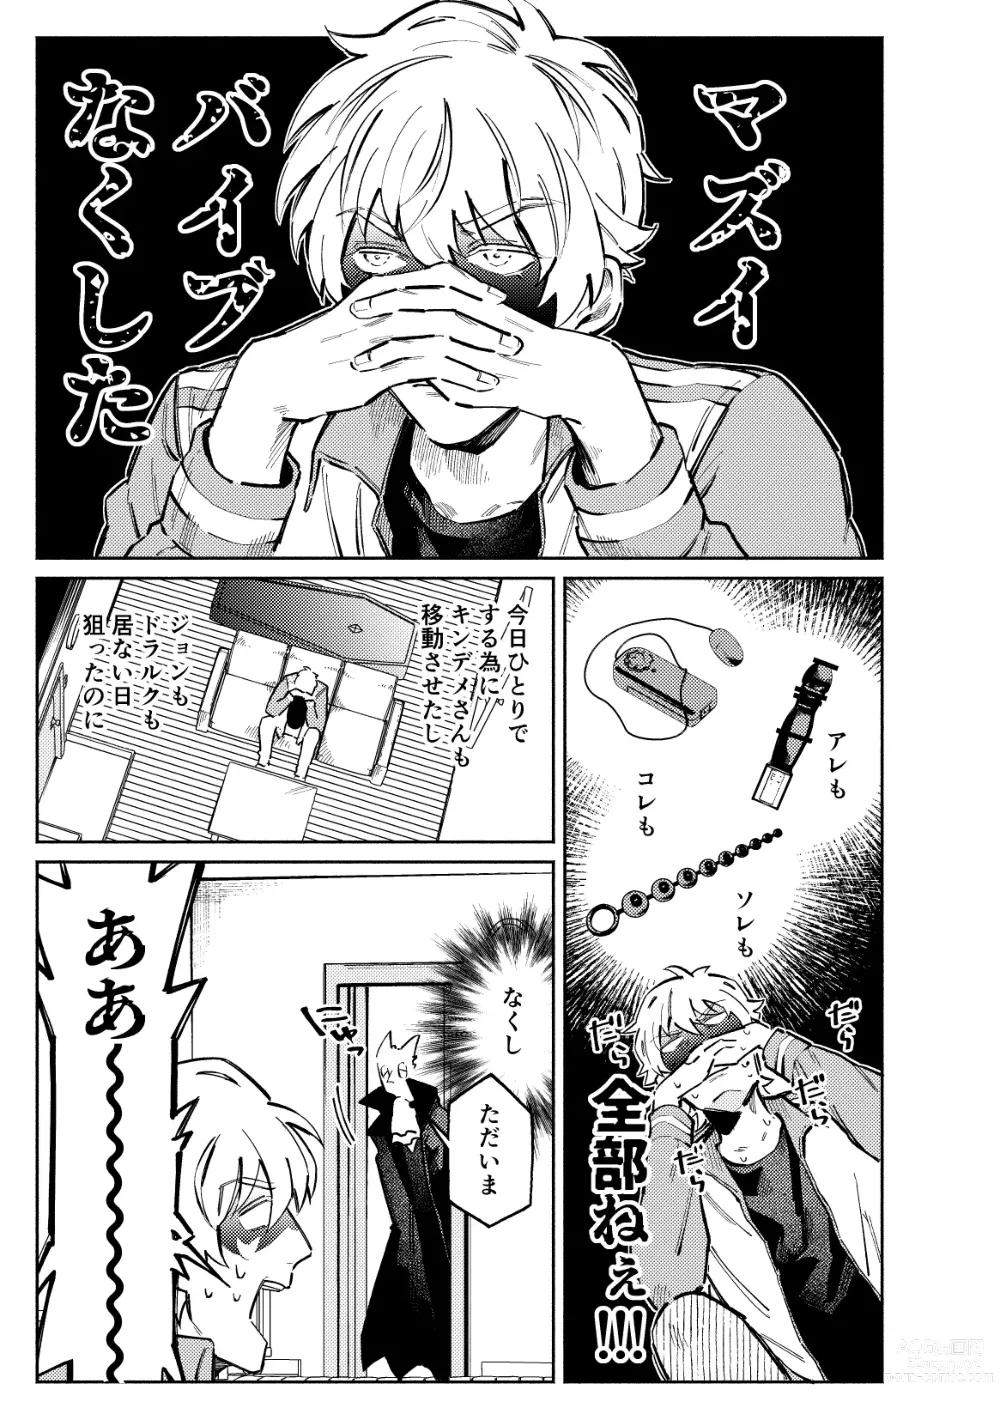 Page 3 of doujinshi 1stDRxxx